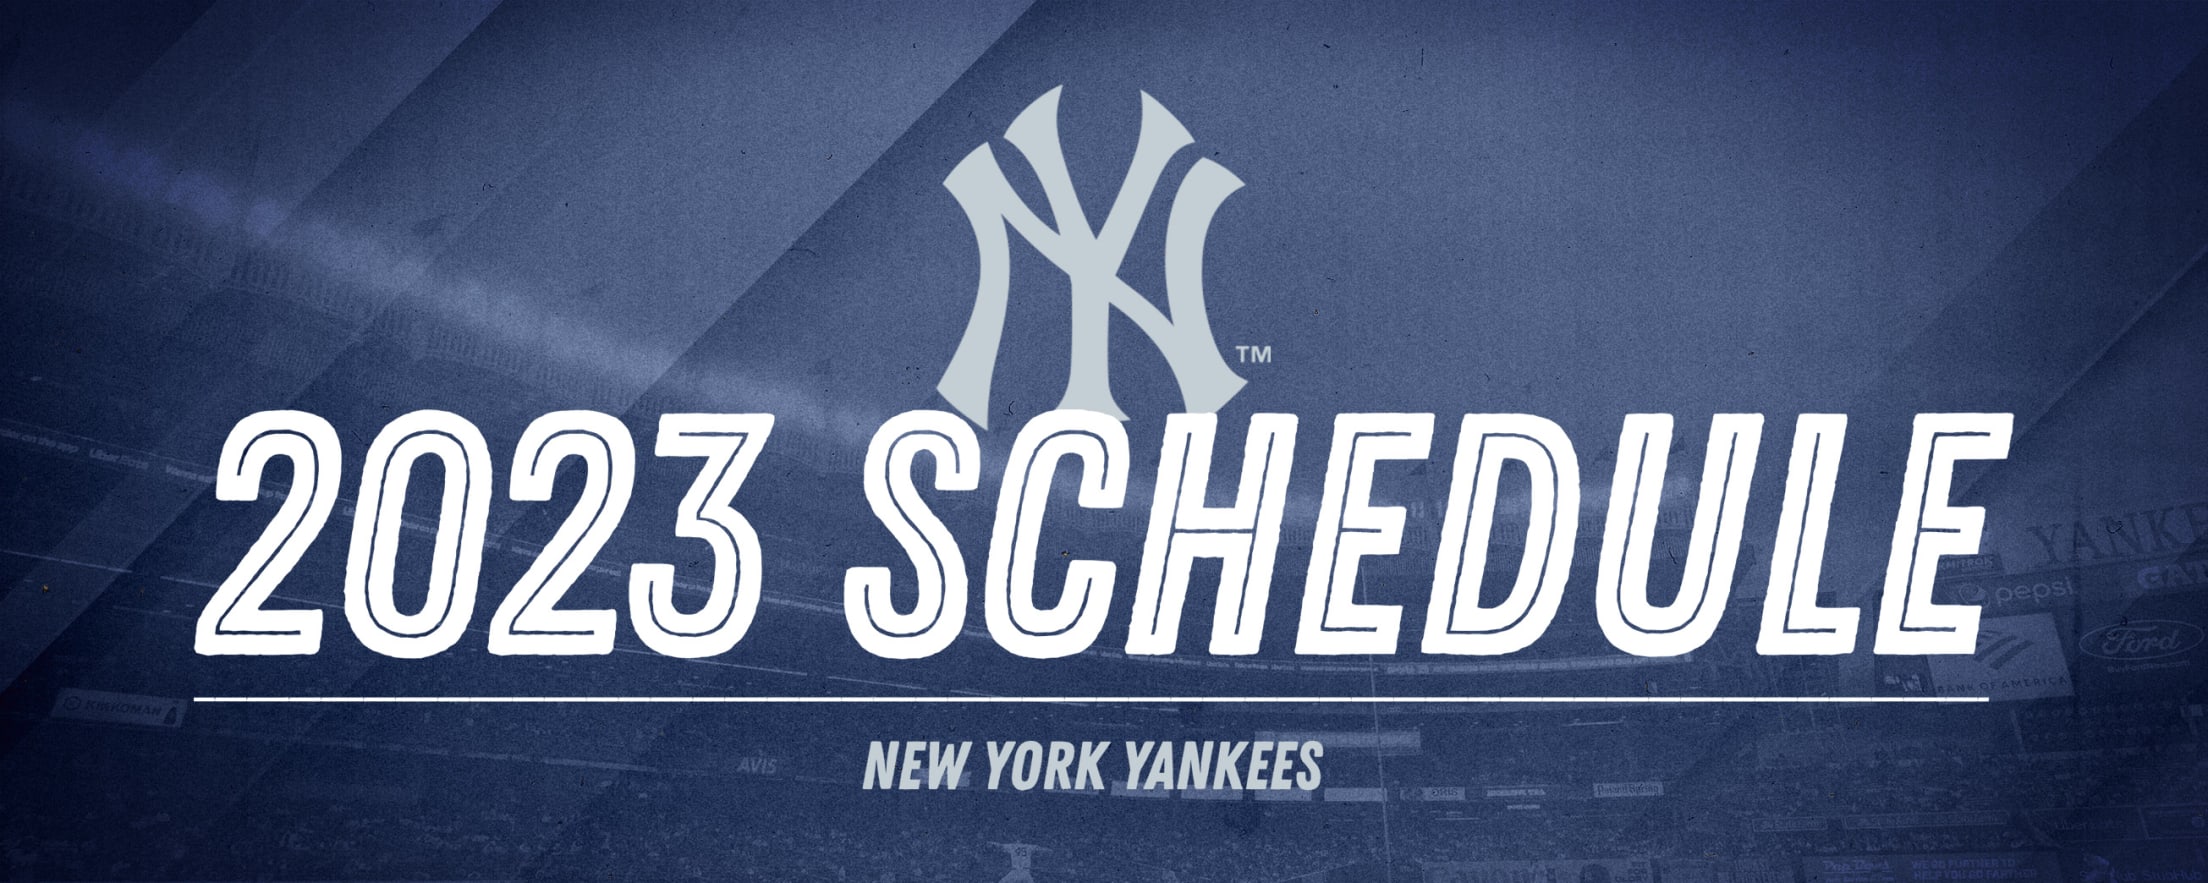 Ny Yankees Tickets 2023 2023